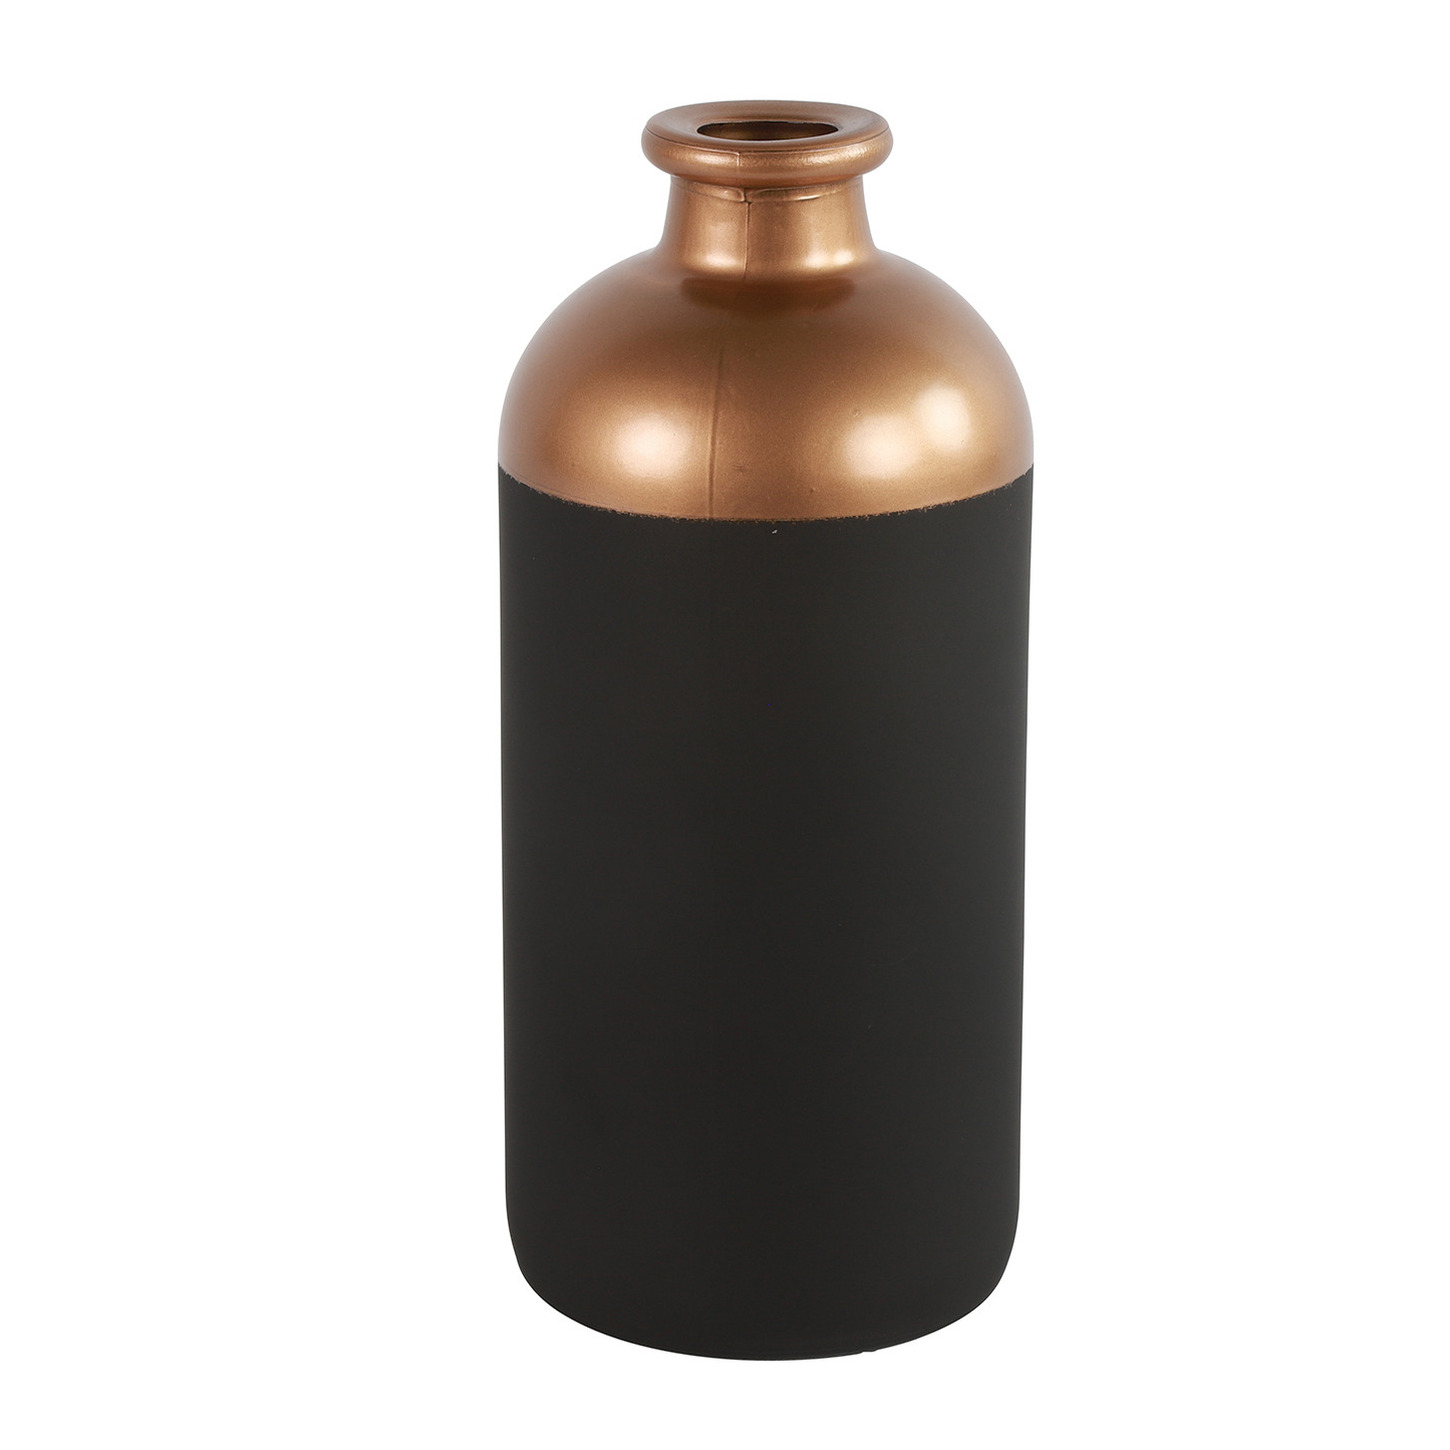 Countryfield Bloemen-deco vaas zwart-koper glas fles D11 x H25 cm